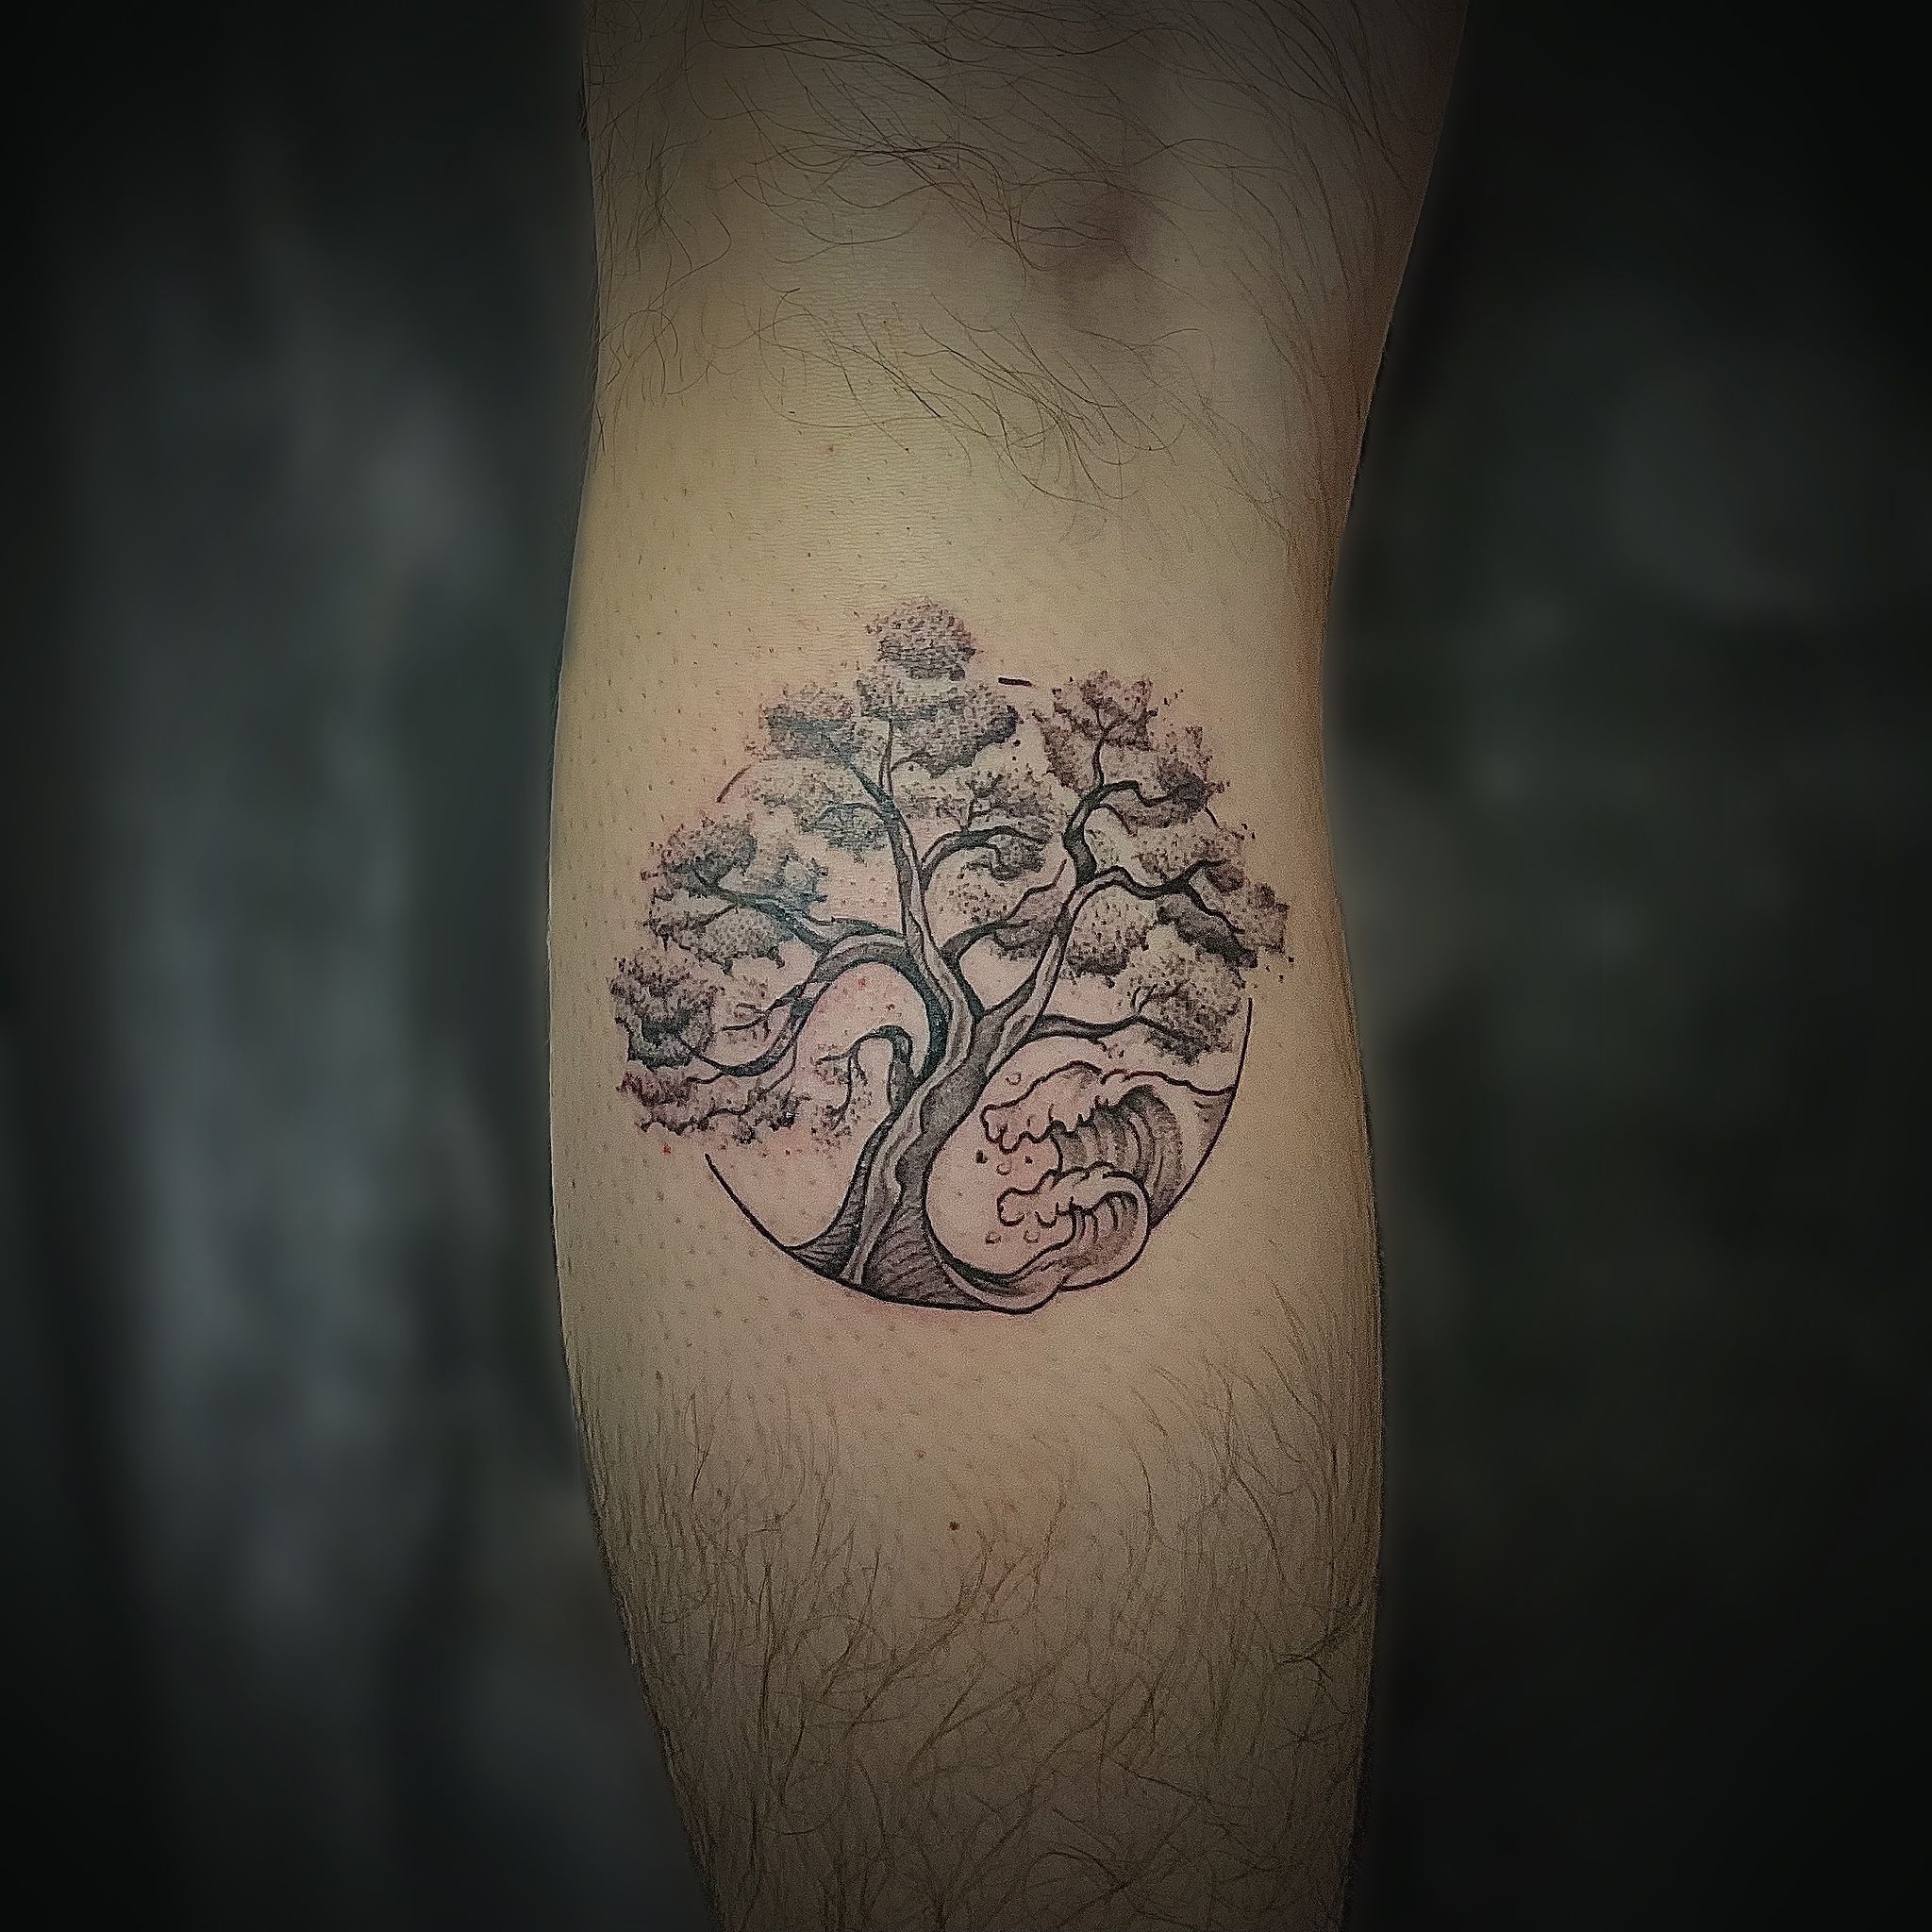 Tattoo uploaded by Nate • Geometric Divi tree tattoo - Tattoo Chiang Mai  #geometrictattoo #treetattoo #finelinetattoo #abstracttattoo  #blacktattooart #blackworktattoo #blacktattooing #tattooart #amazingtattoos  #besttattoos #tattoochiangmai ...